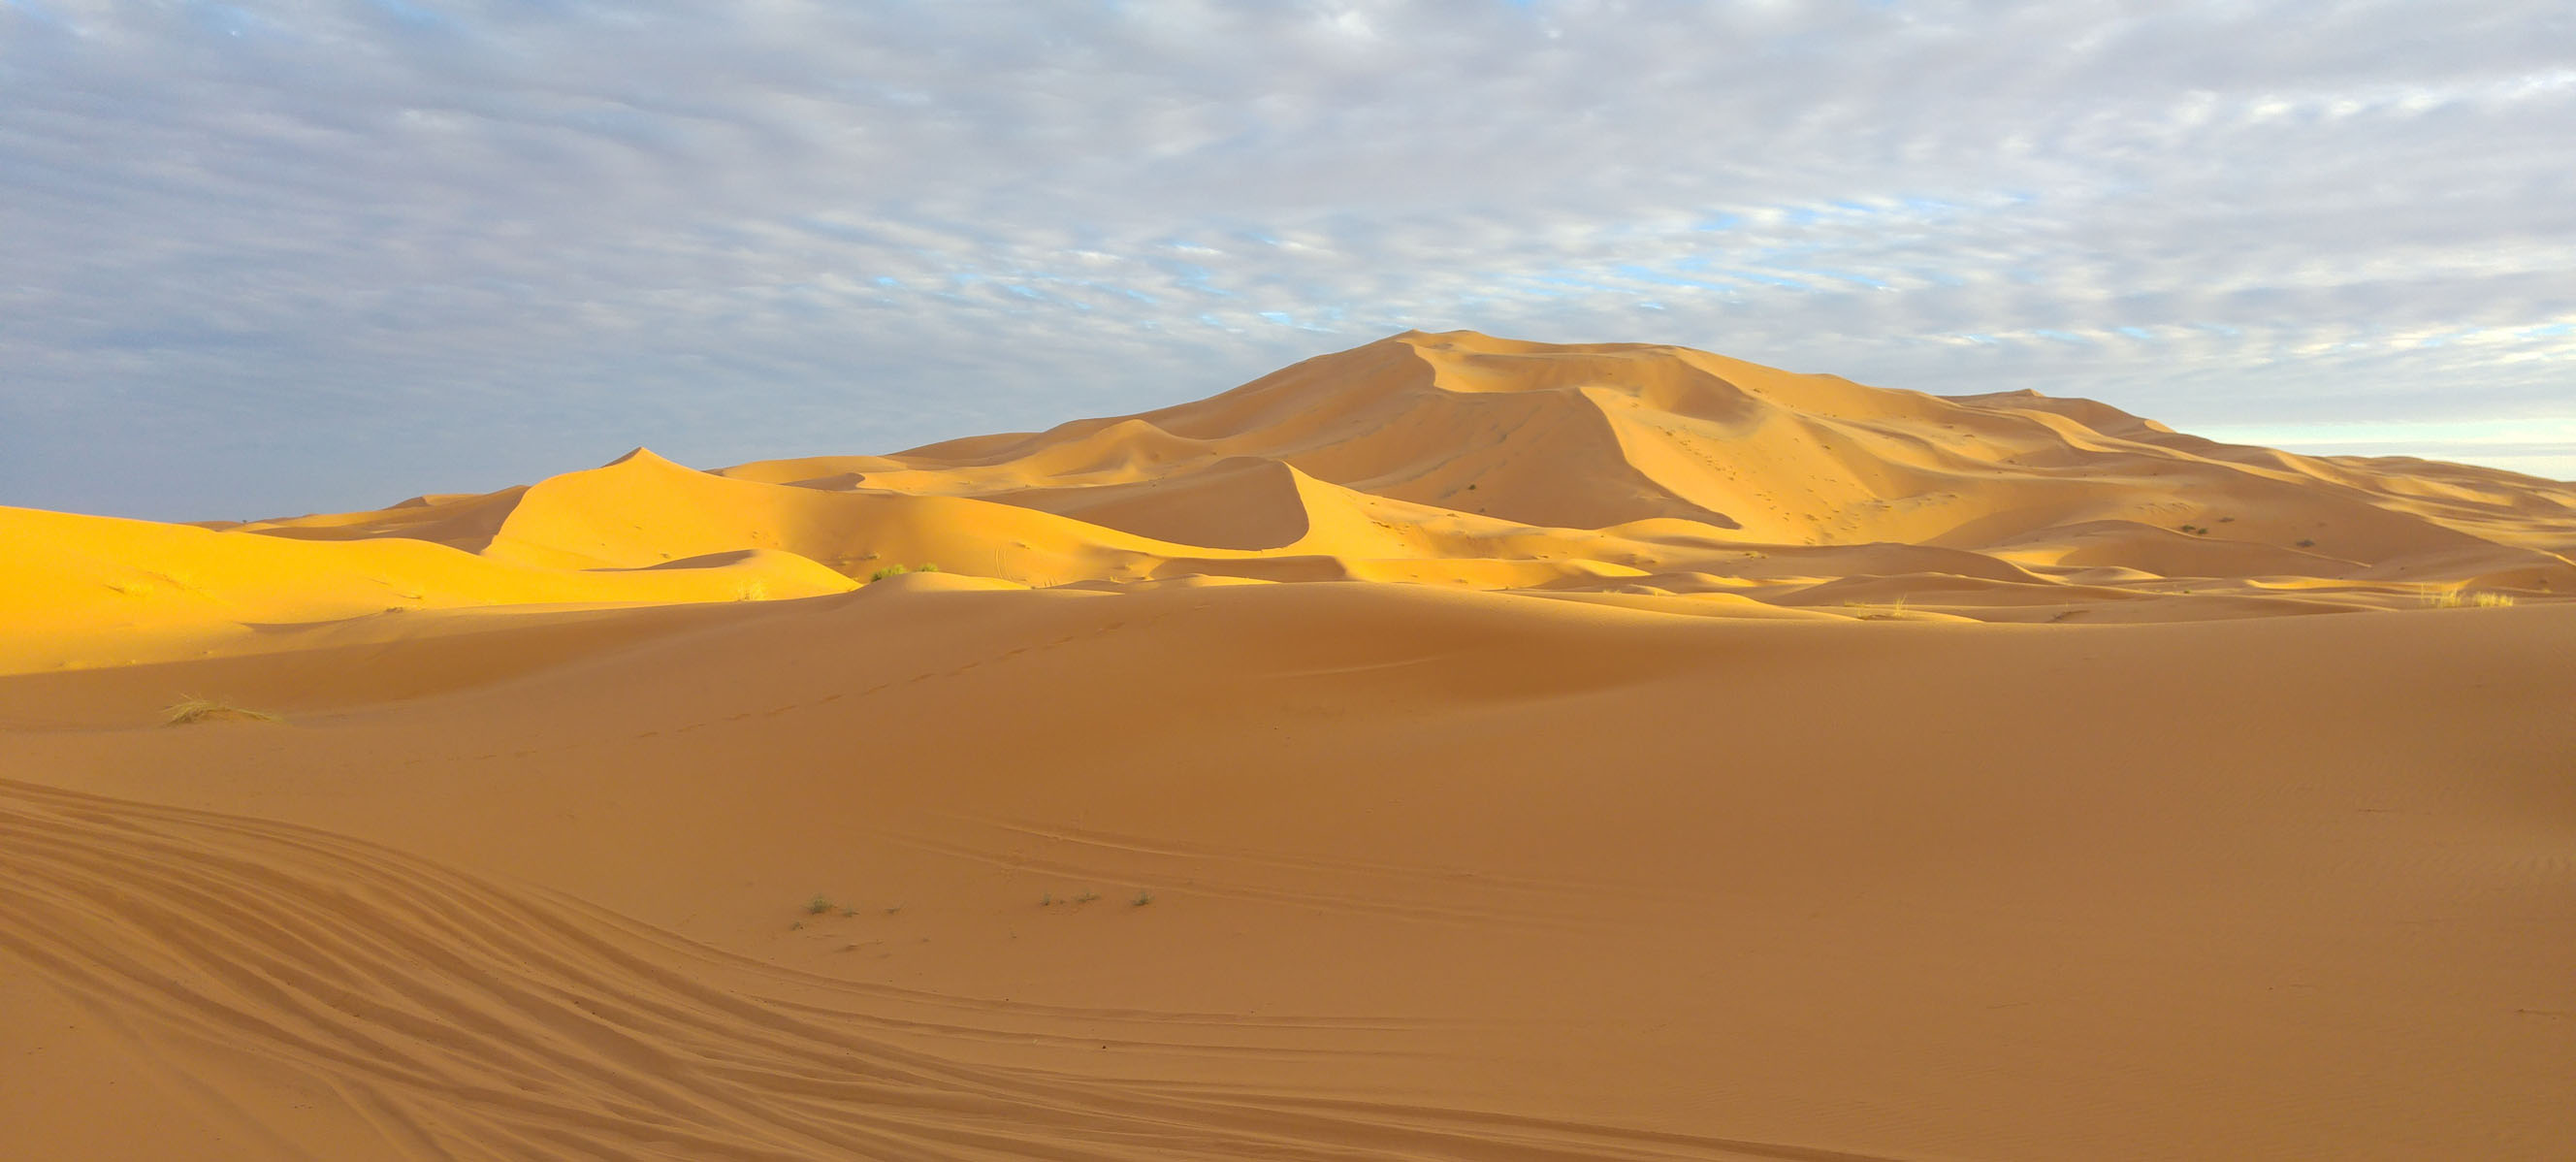 Jak dostać się na Saharę będąc w Maroku?